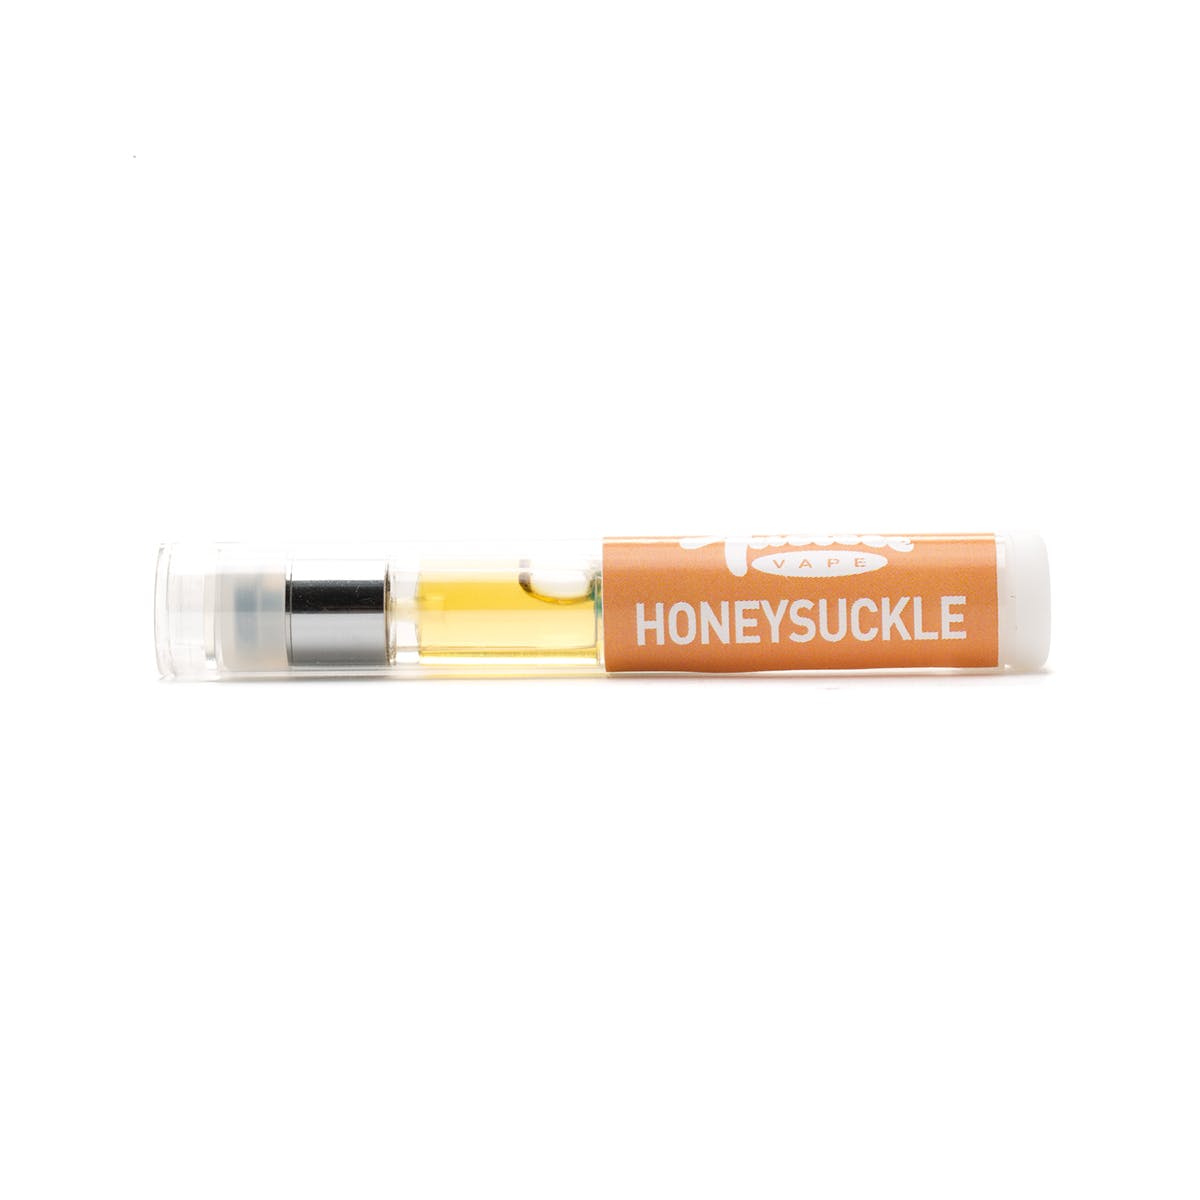 Honeysuckle Tasteee Cartridge